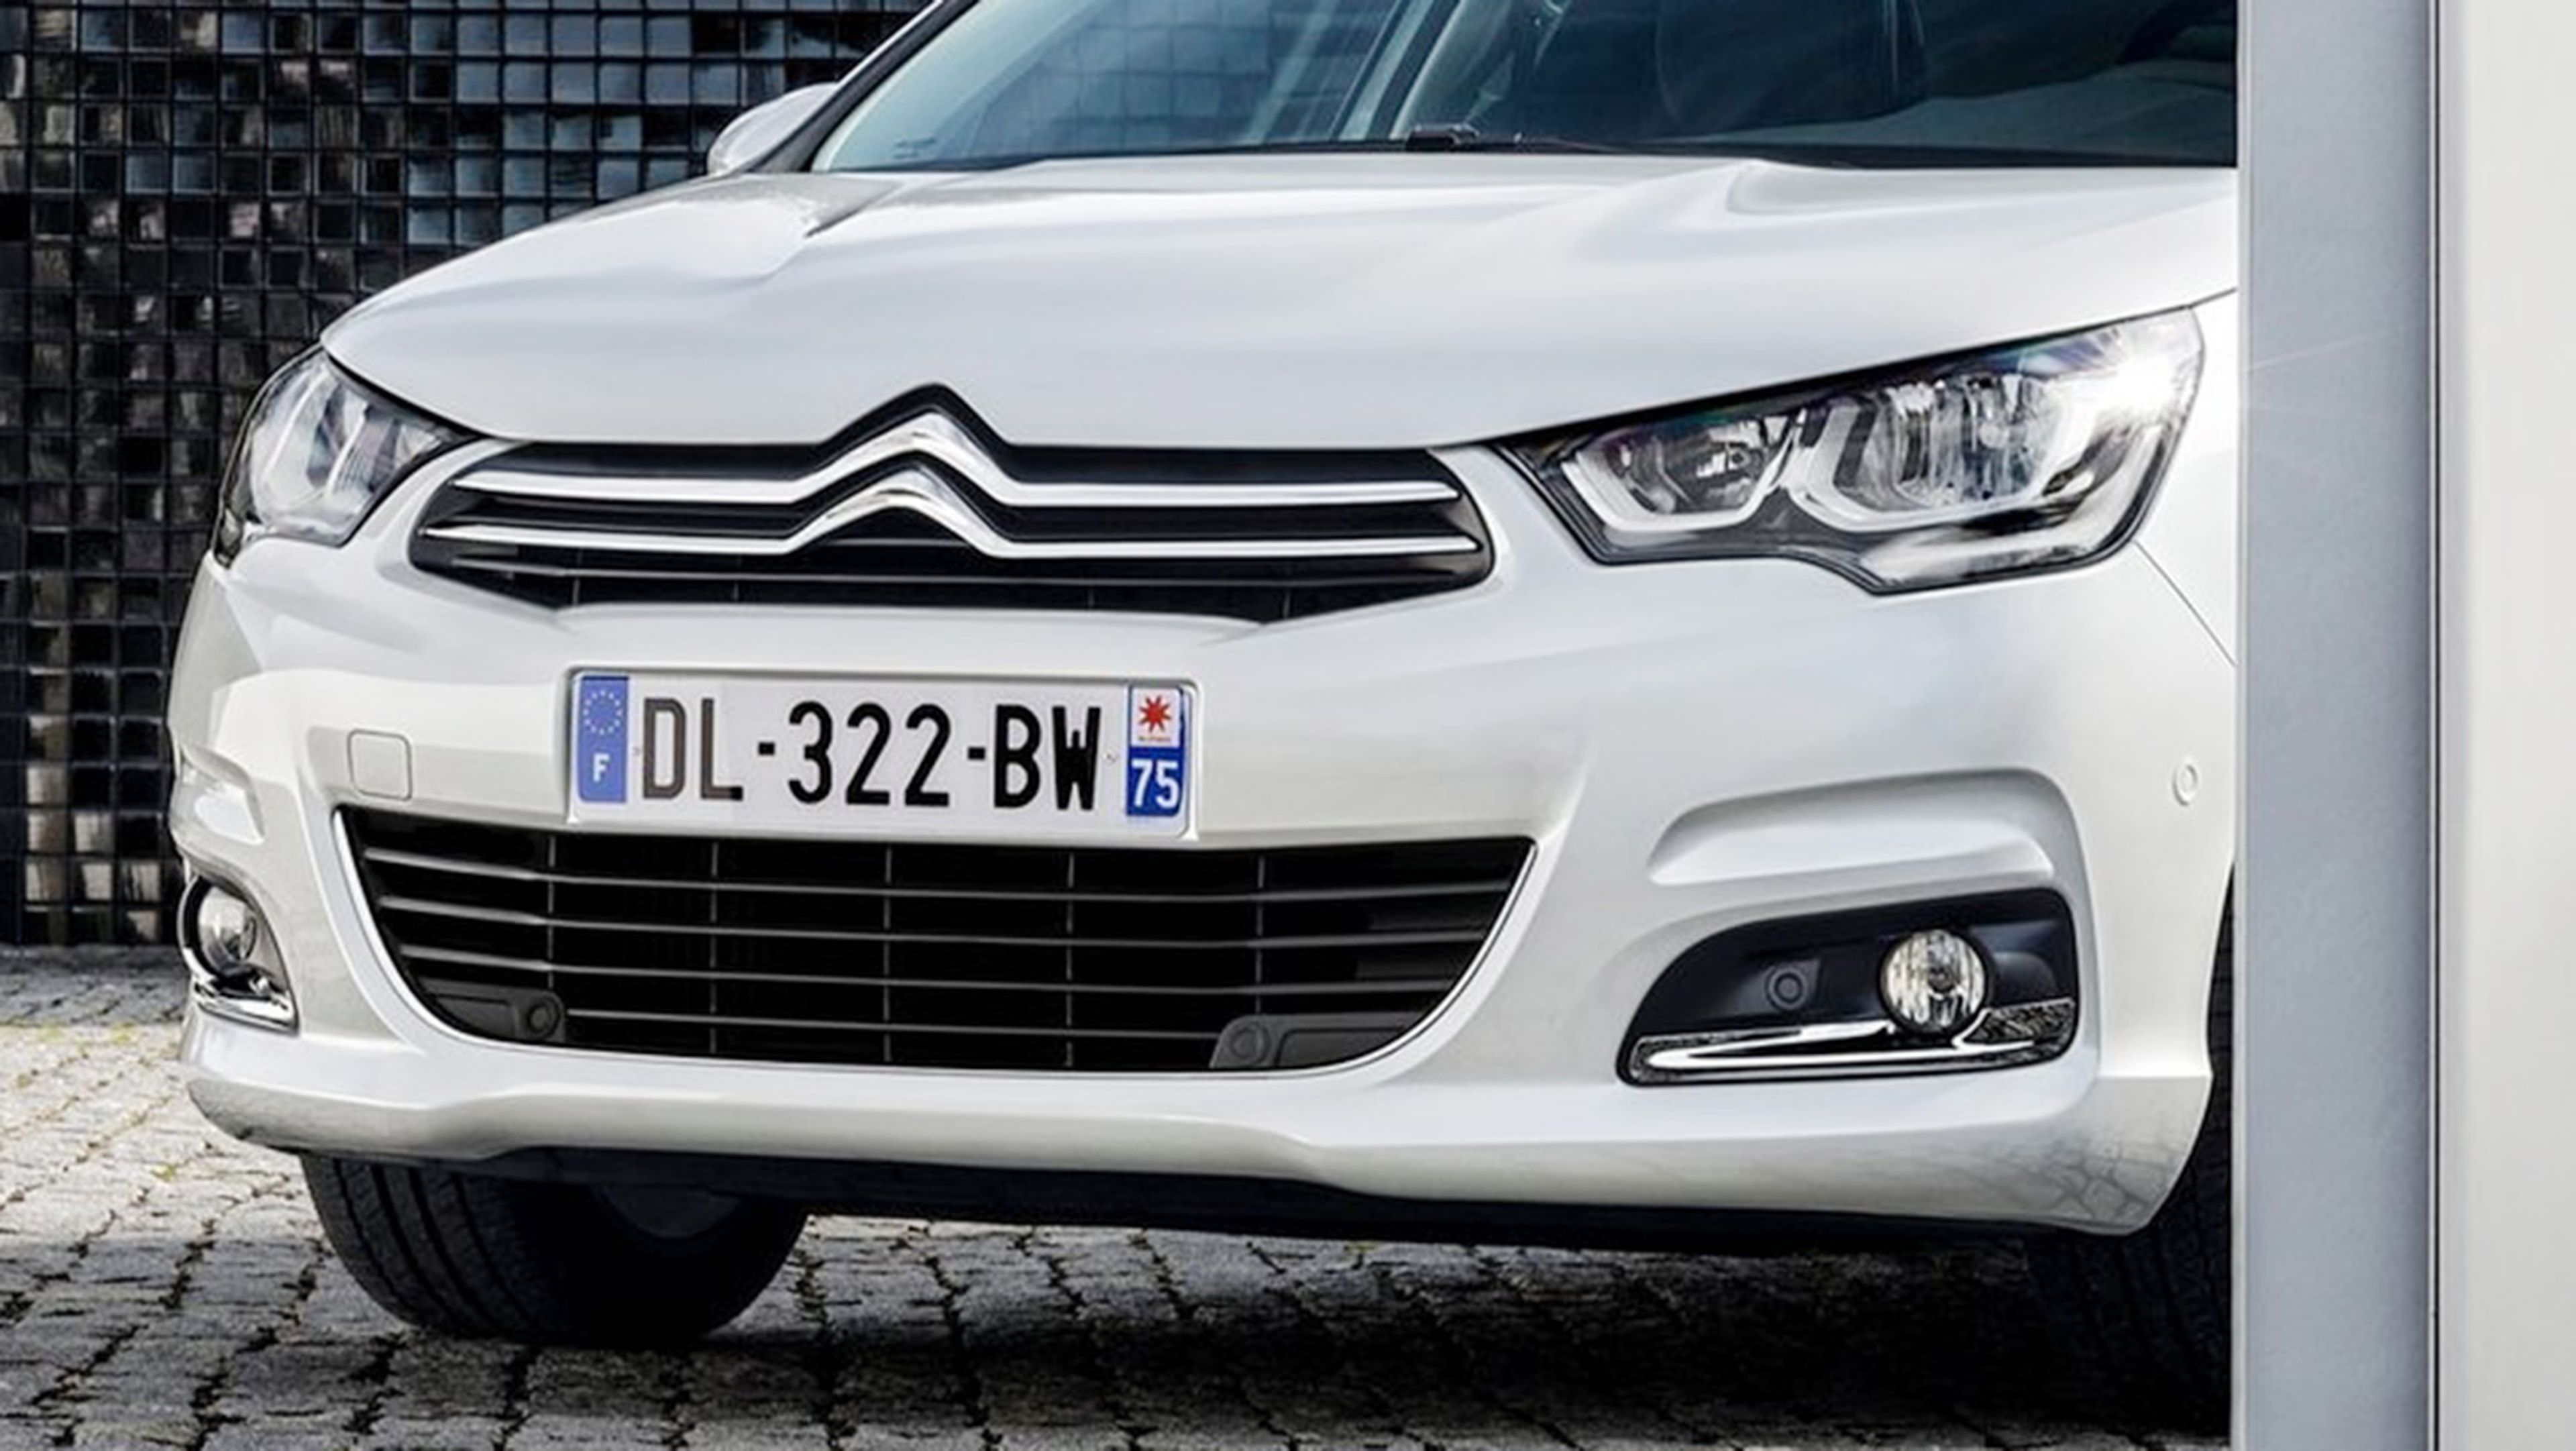 5 detalles que debes conocer del Citroën C4